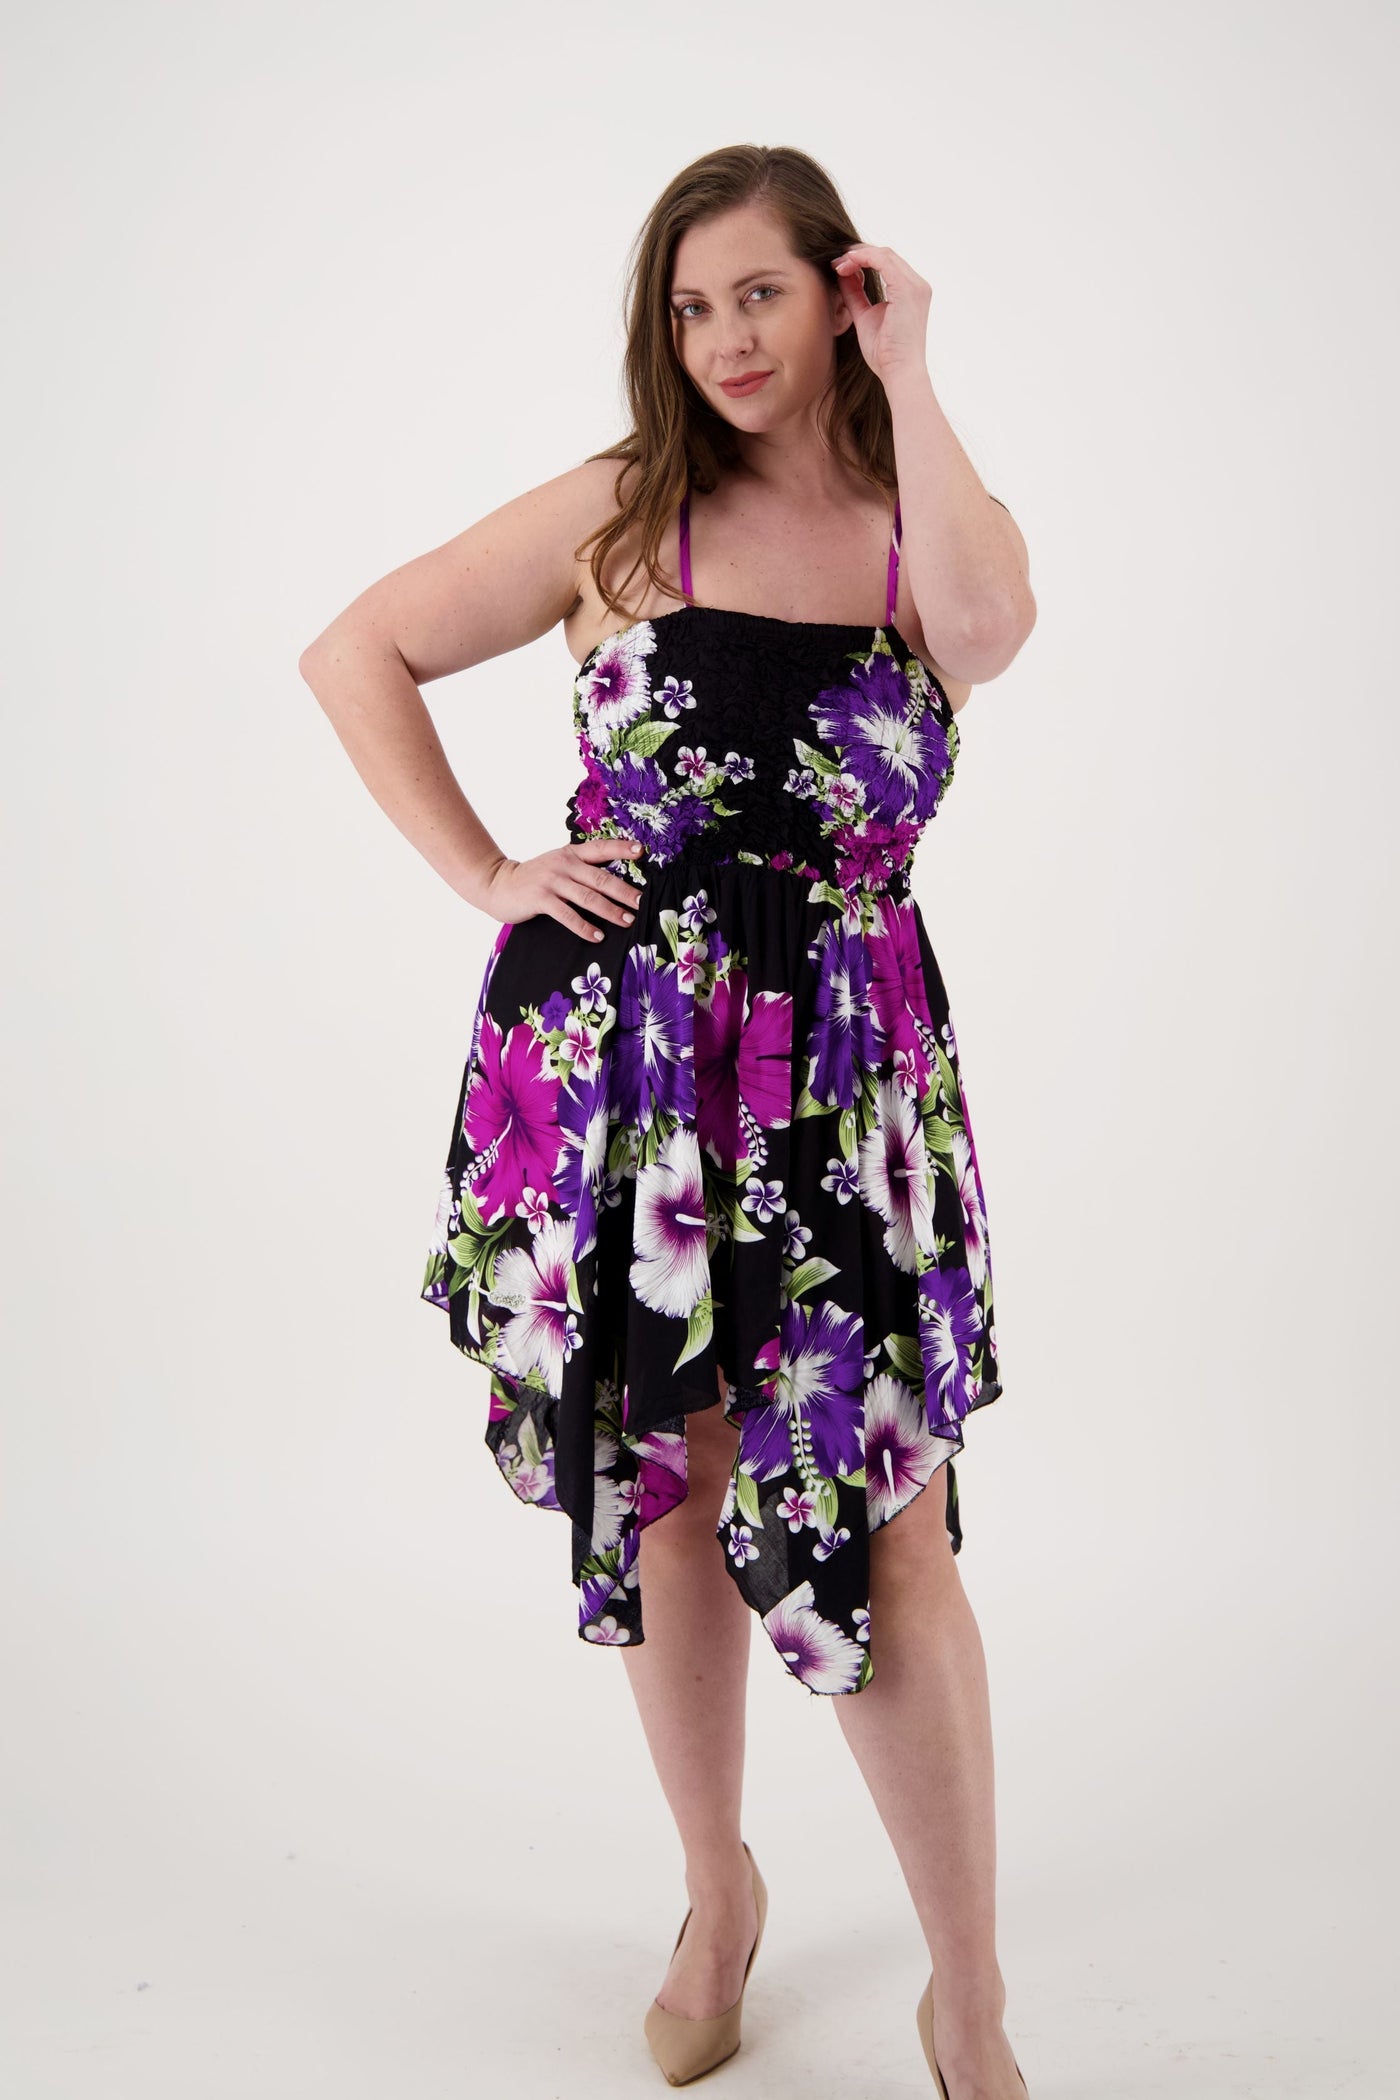 Long Fairytale Bottom Floral Print Beach Dress TH-349